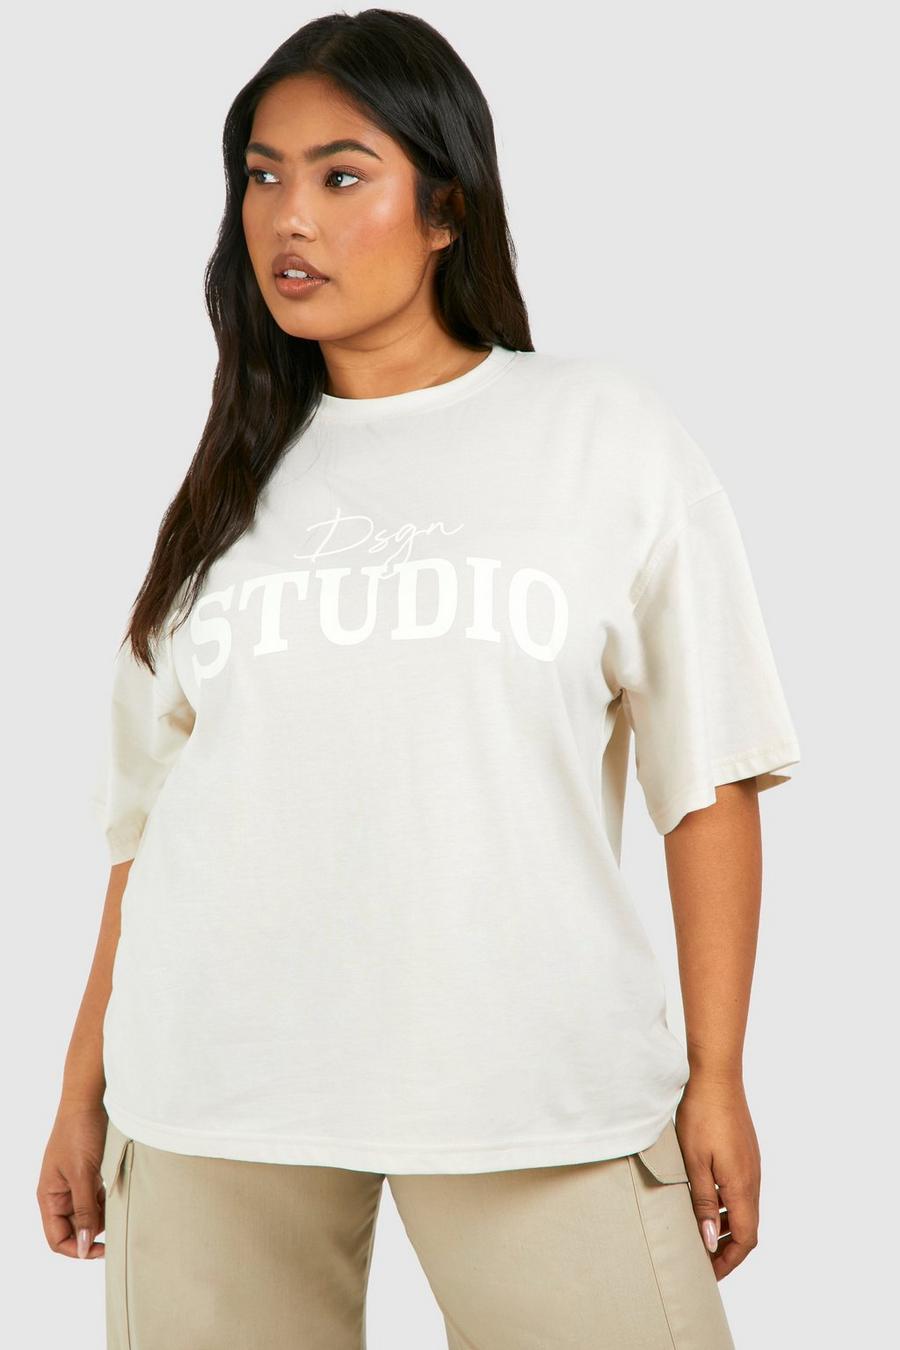 Camiseta Plus oversize con estampado Dsgn Studio, Stone